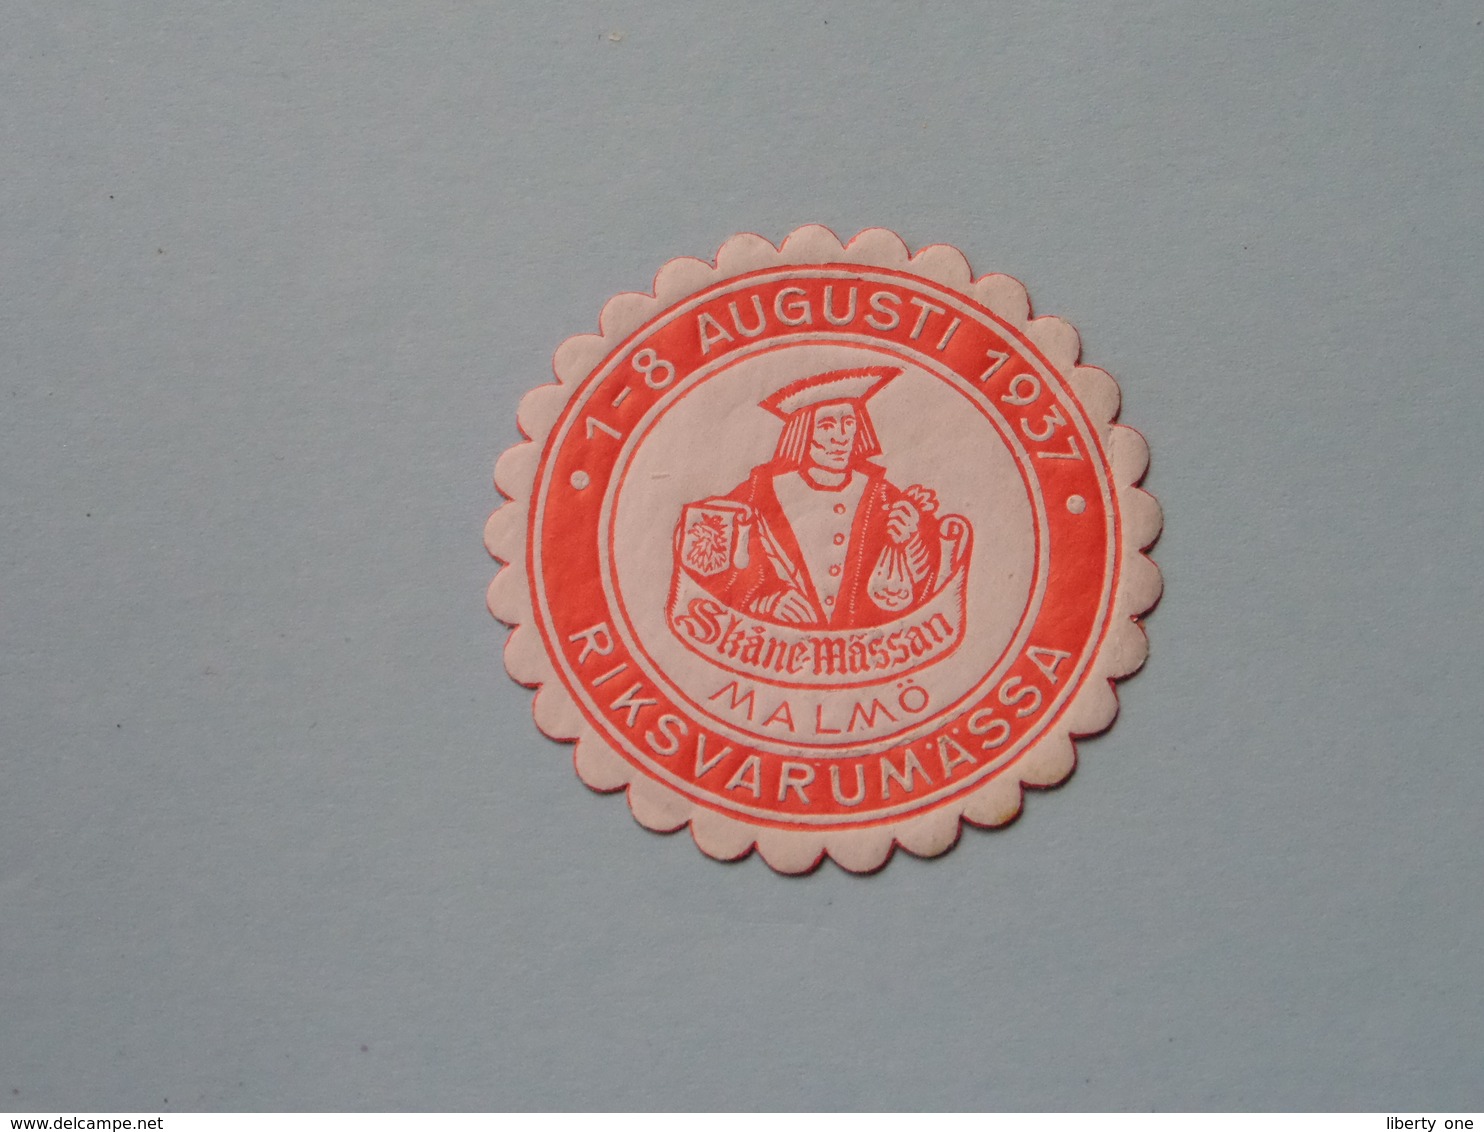 1937 RIKSVARUMASSA MALMÖ ( Sluitzegel Timbres-Vignettes Picture Stamp Verschlussmarken ) - Seals Of Generality